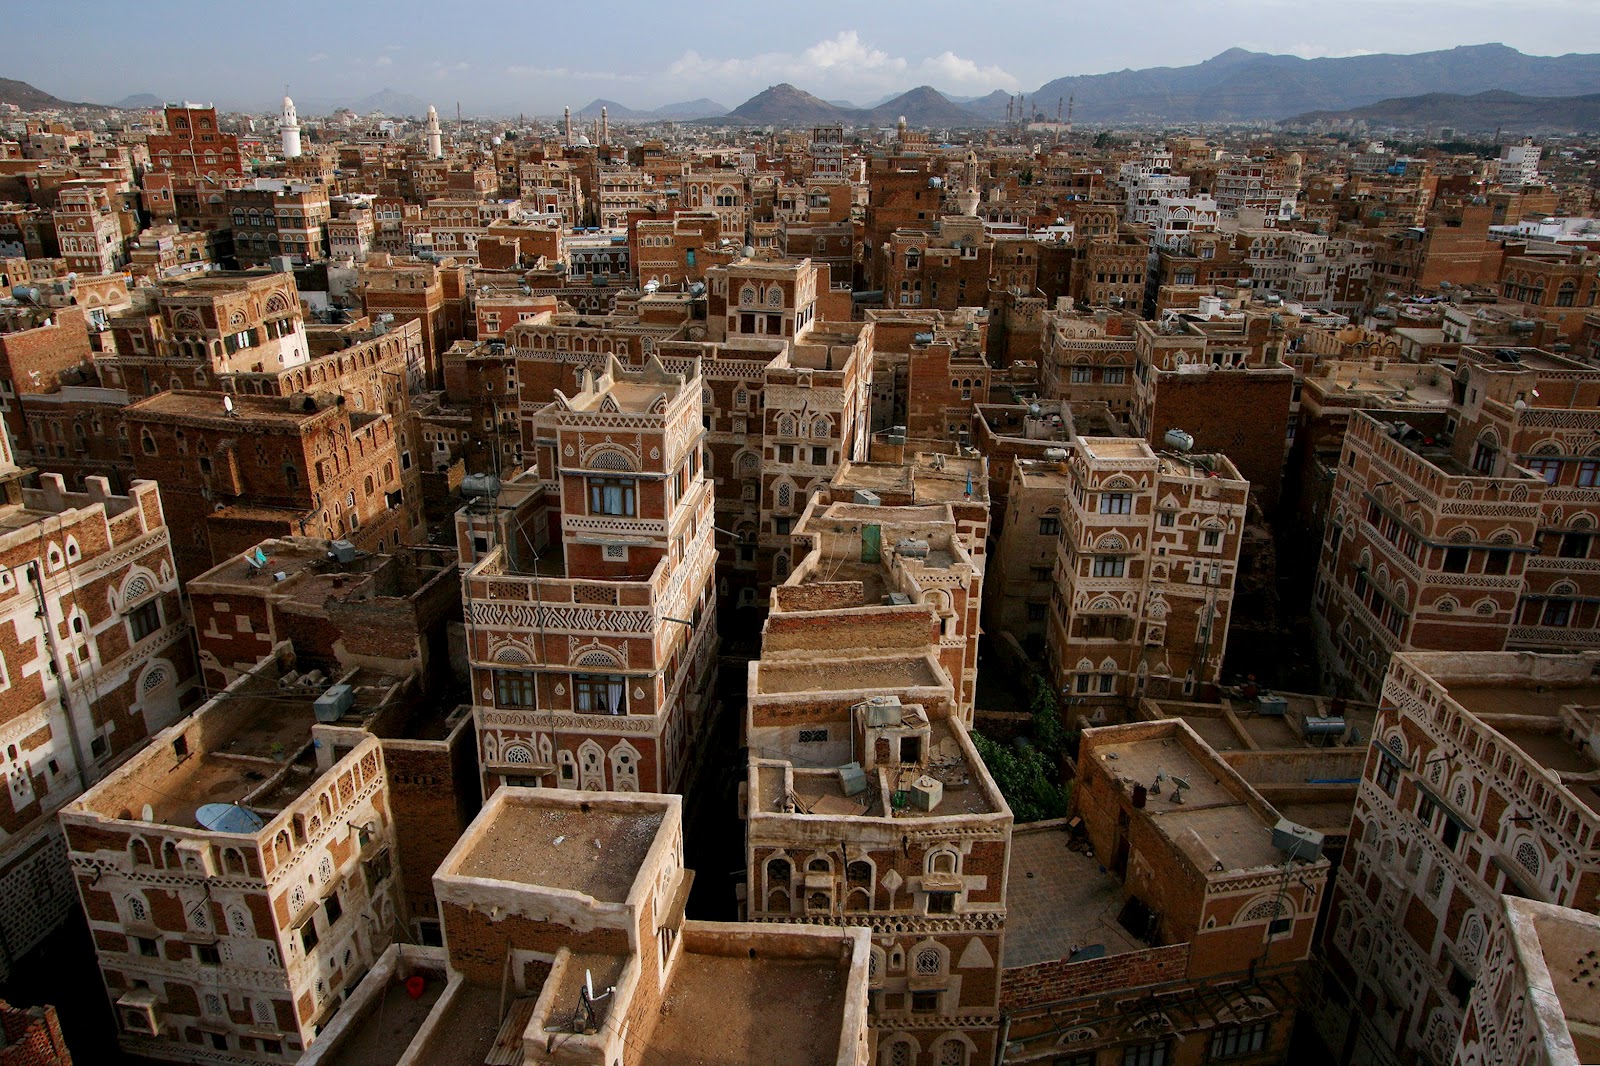 Chuyển phát nhanh Singpost Logistics đi Yemen giá rẻ chất lượng